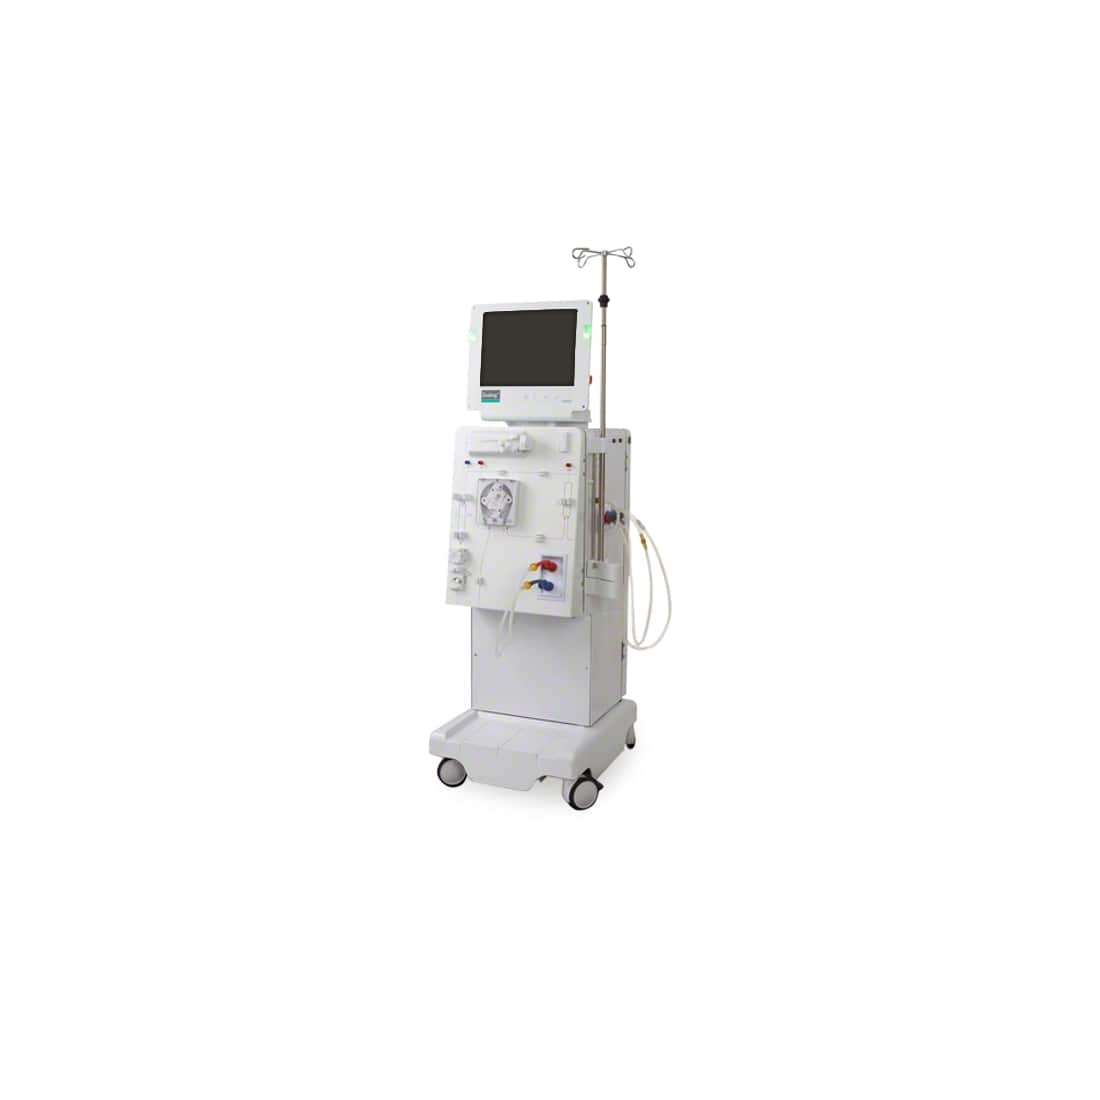 B Braun Dialog Plus Dialysis Machine